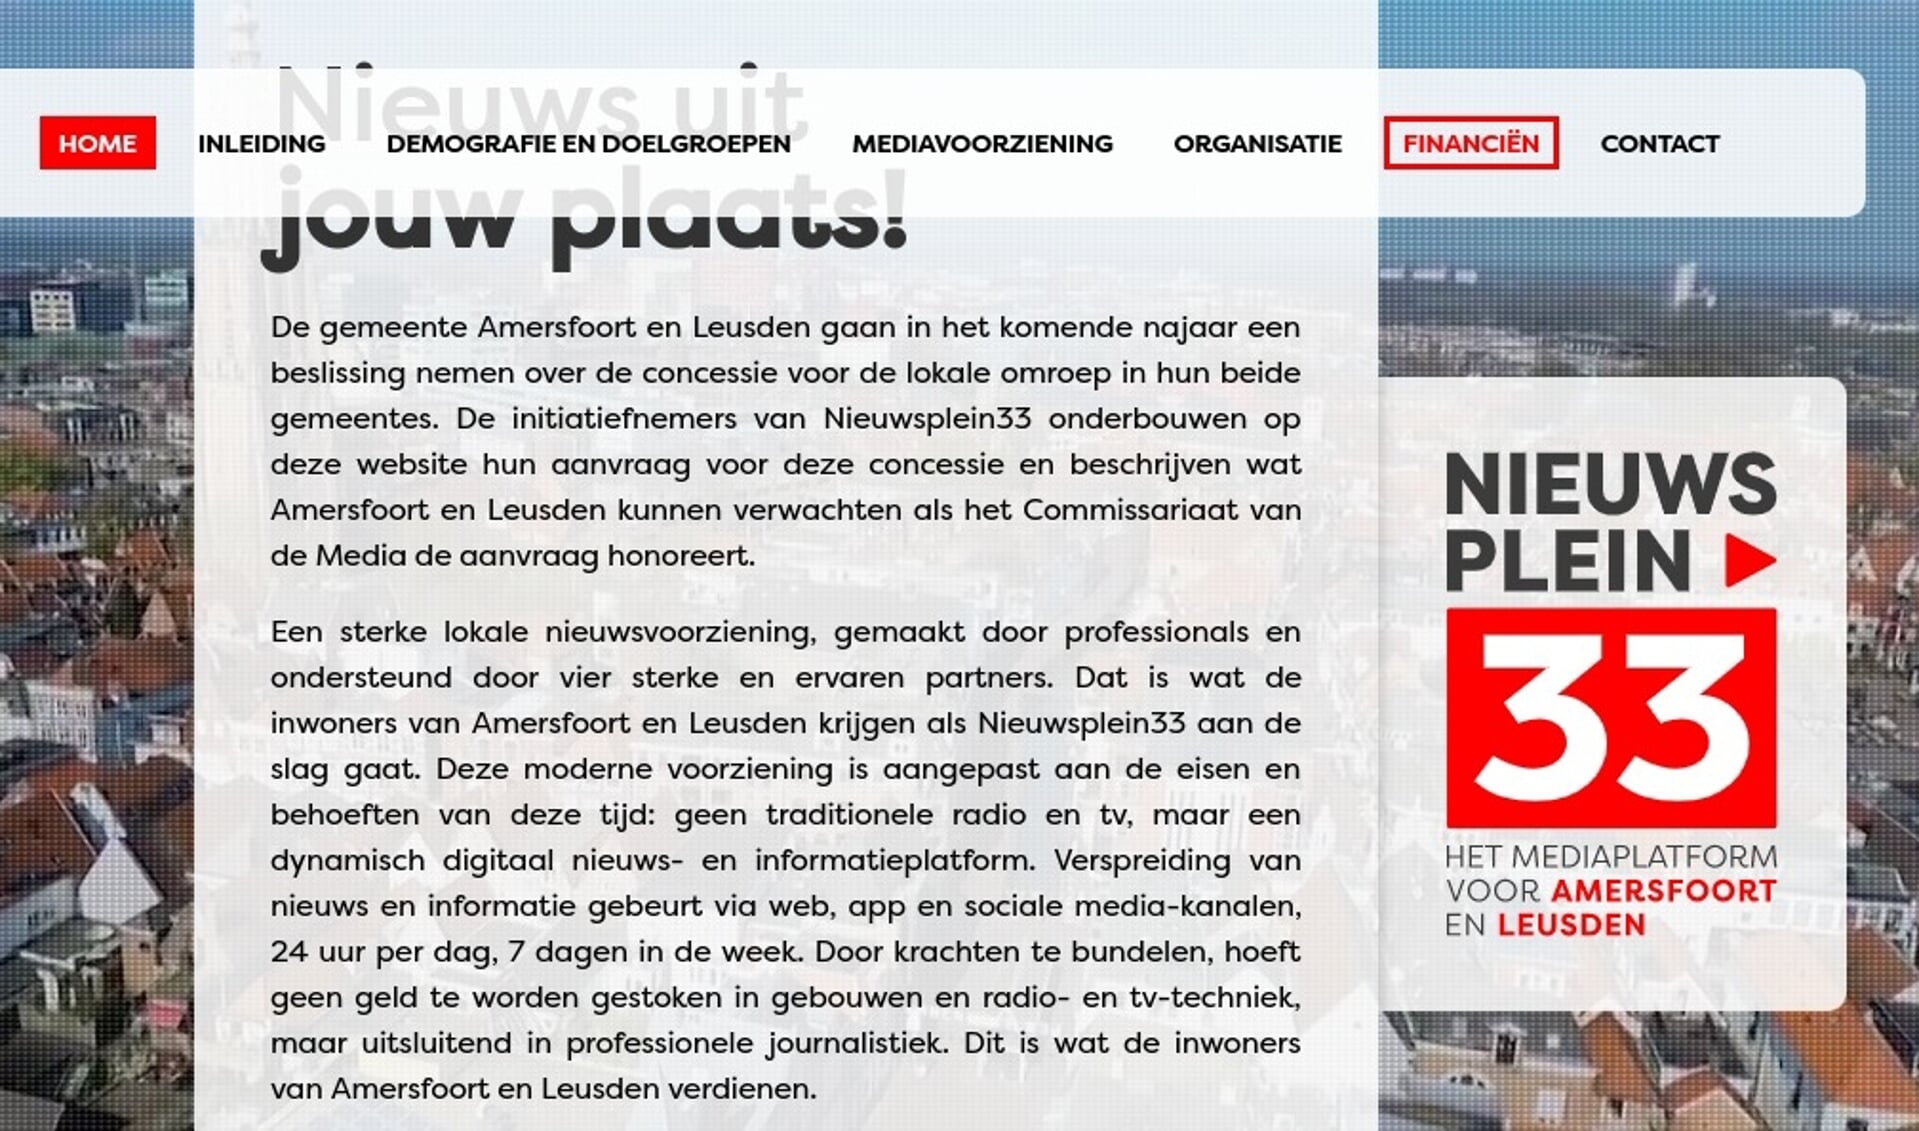 De website van kandidaat-zendgemachtigde Nieuwsplein33 is al in de lucht. 